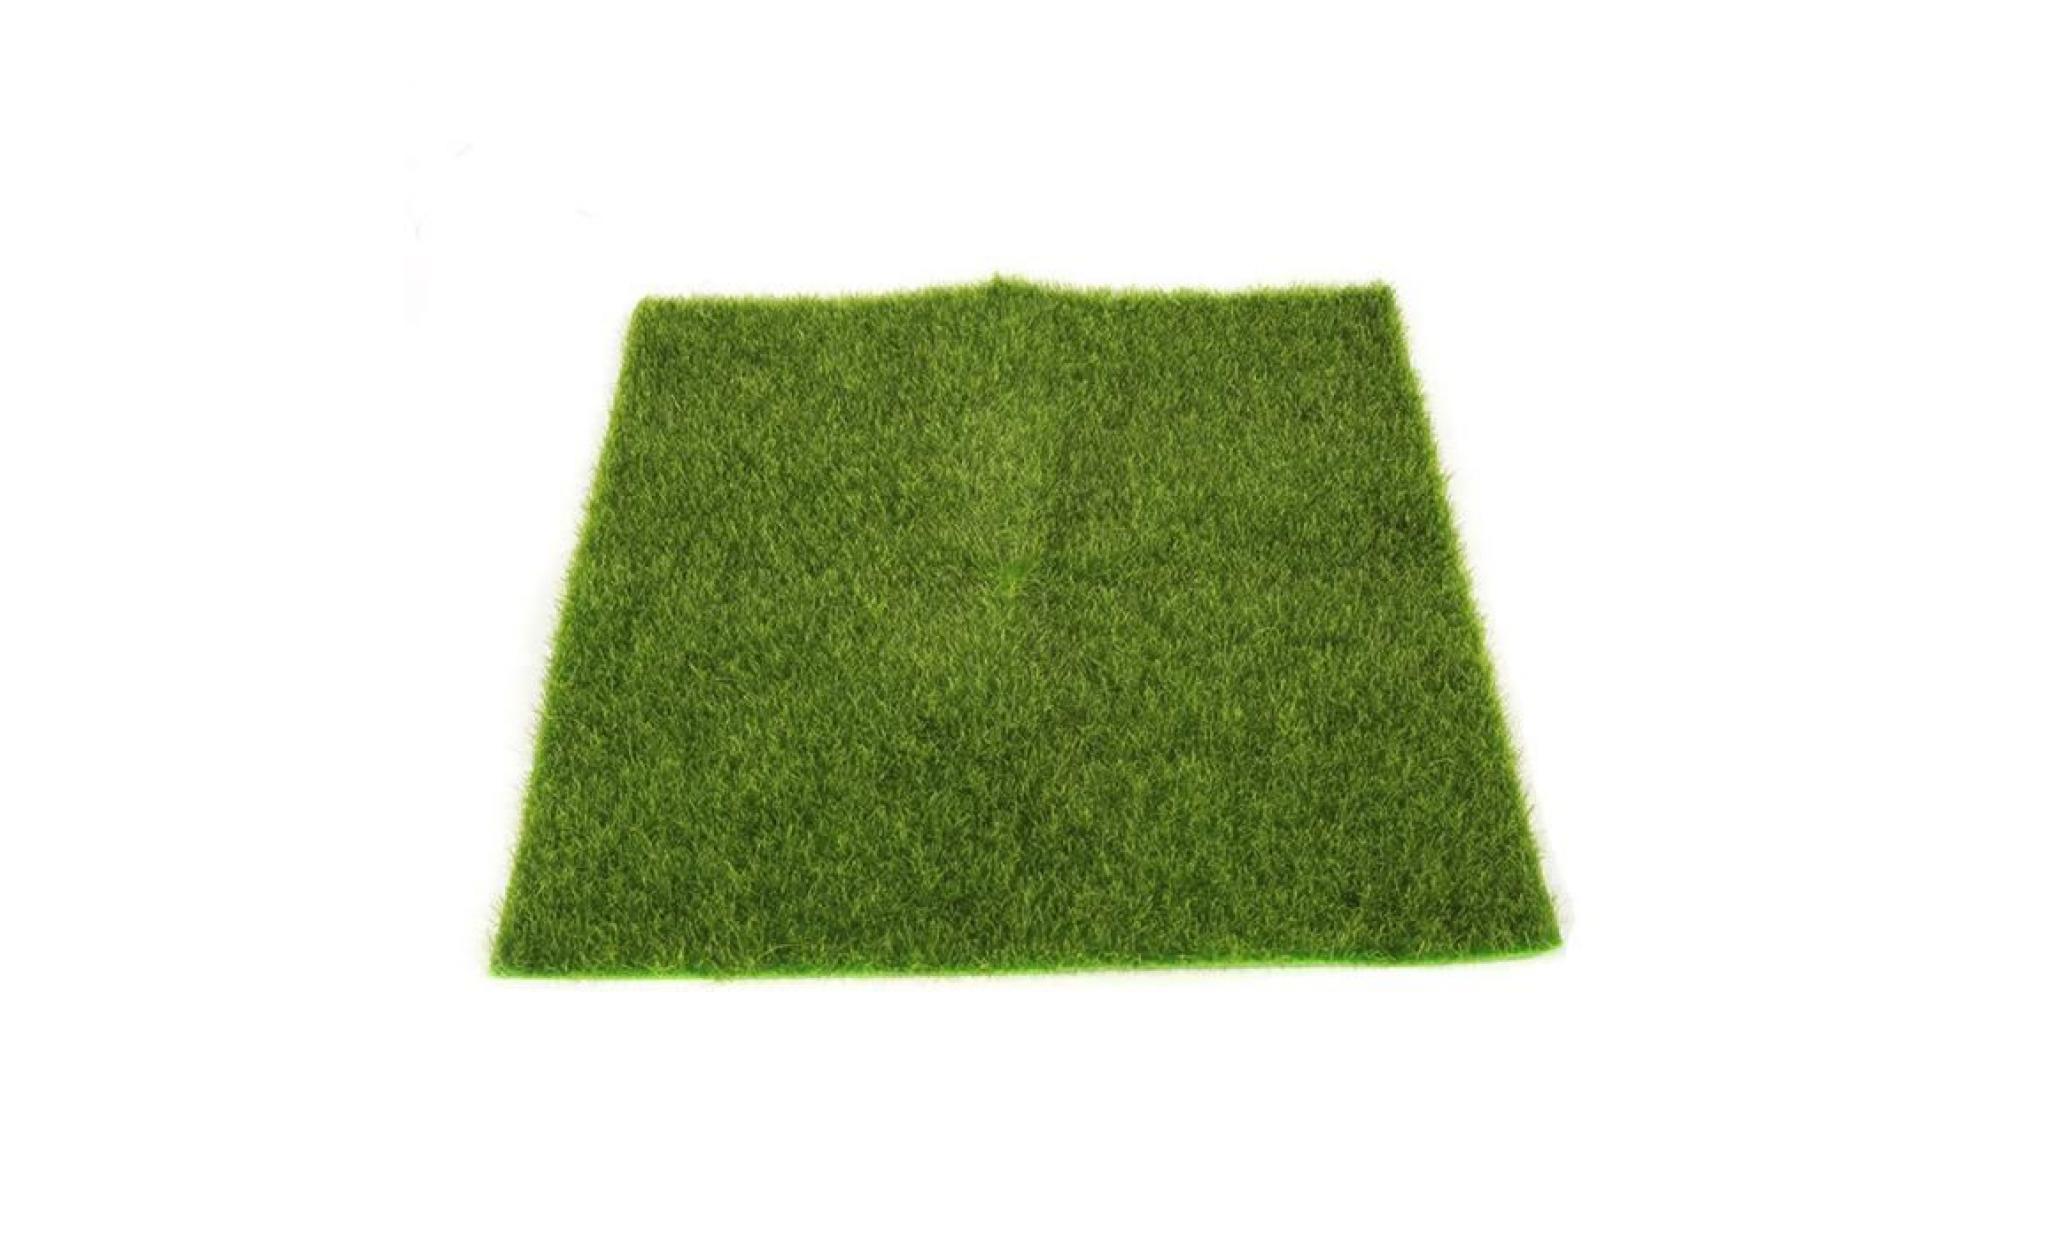 mosakog® gazon artificiel faux jardin herbe pelouse moss craft miniature dollhouse décor vert_1339 pas cher